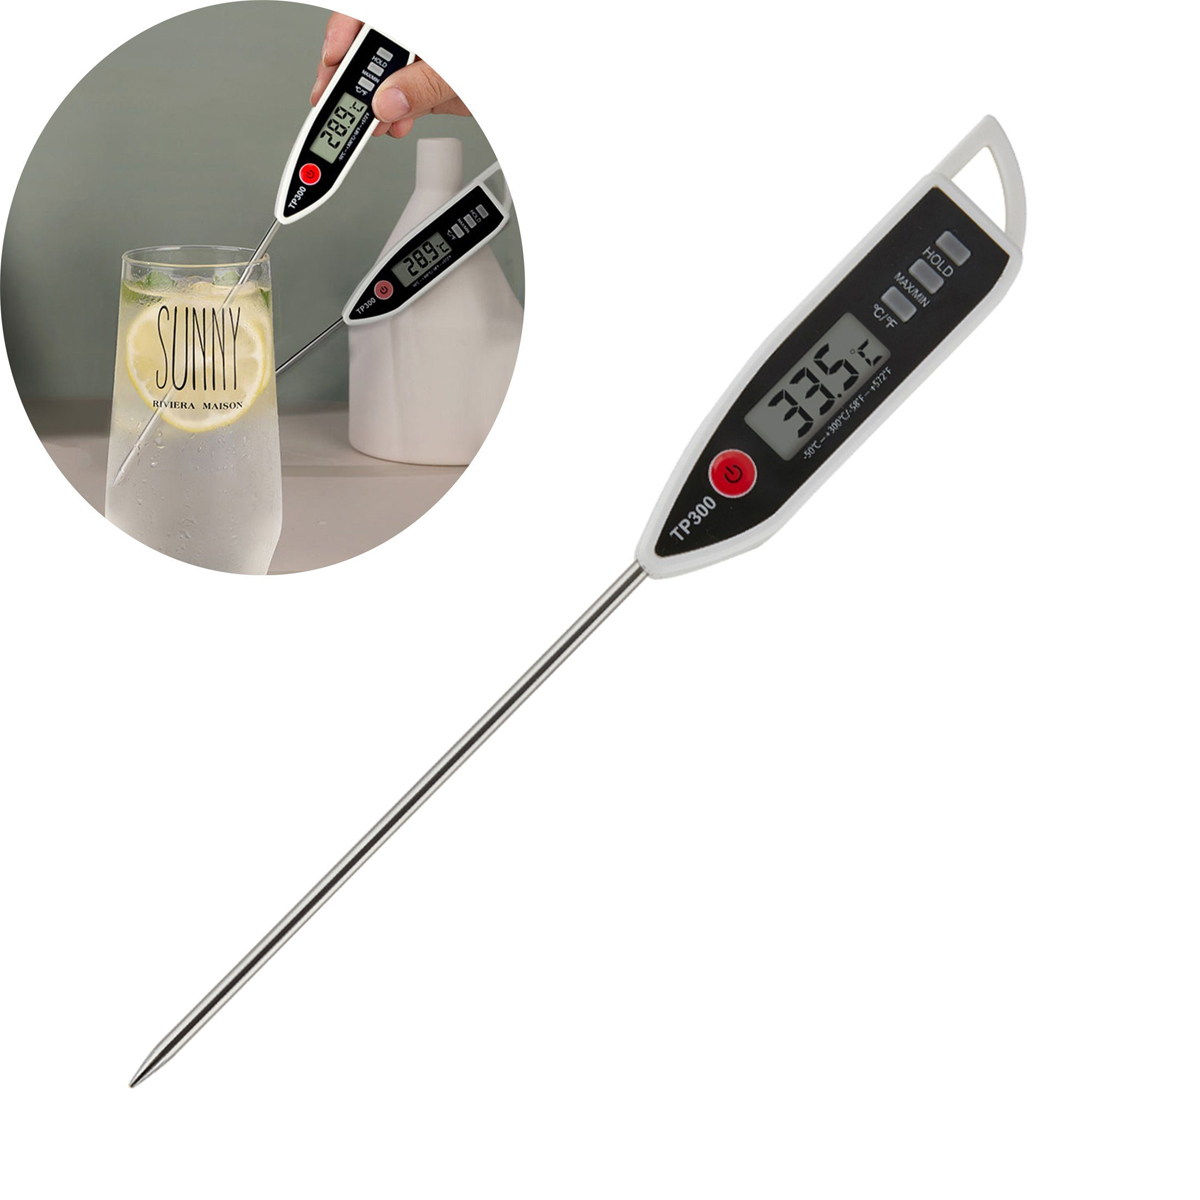 KÜLER Sondenthermometer, BBQ-Thermometer, Flüssigkeit, Fleischthermometer für Paste Wassertemperatur